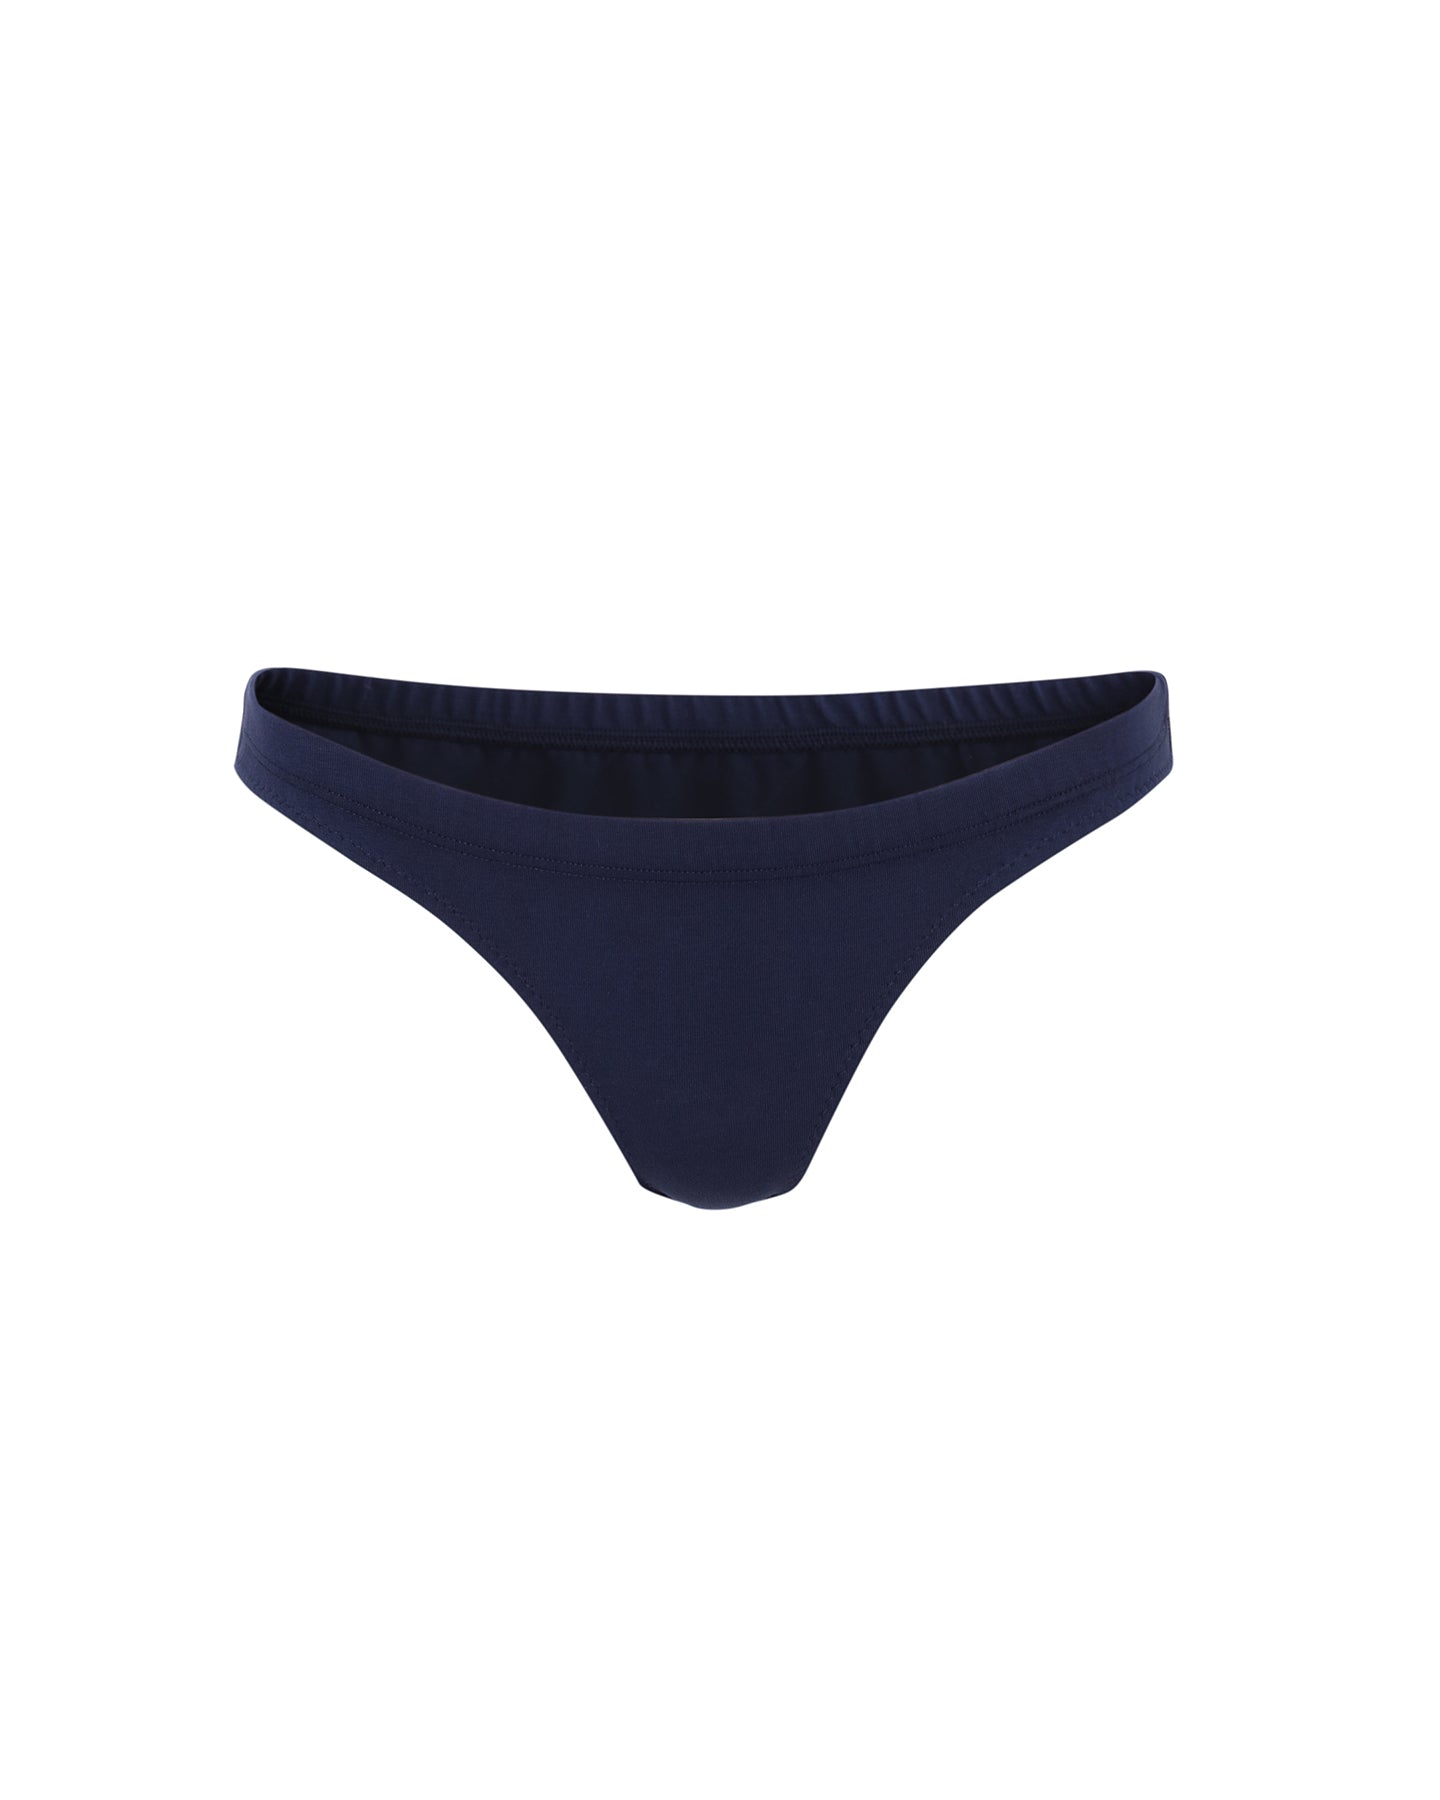 Low Waist Cotton Basic Briefs Underwear Panties Undies for women